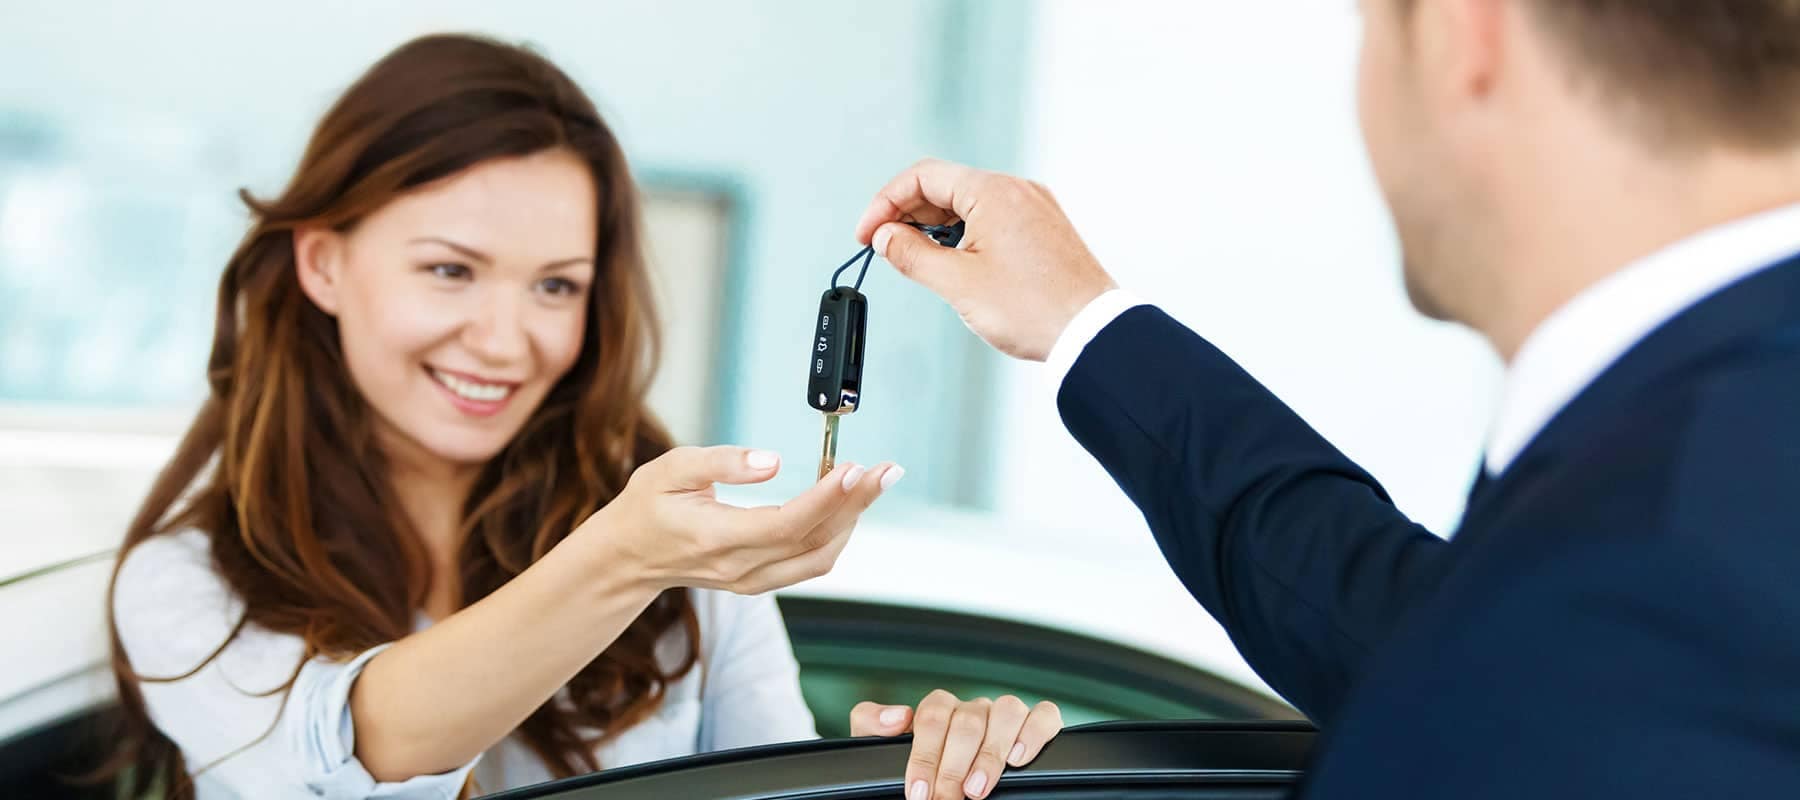 woman receives car keys